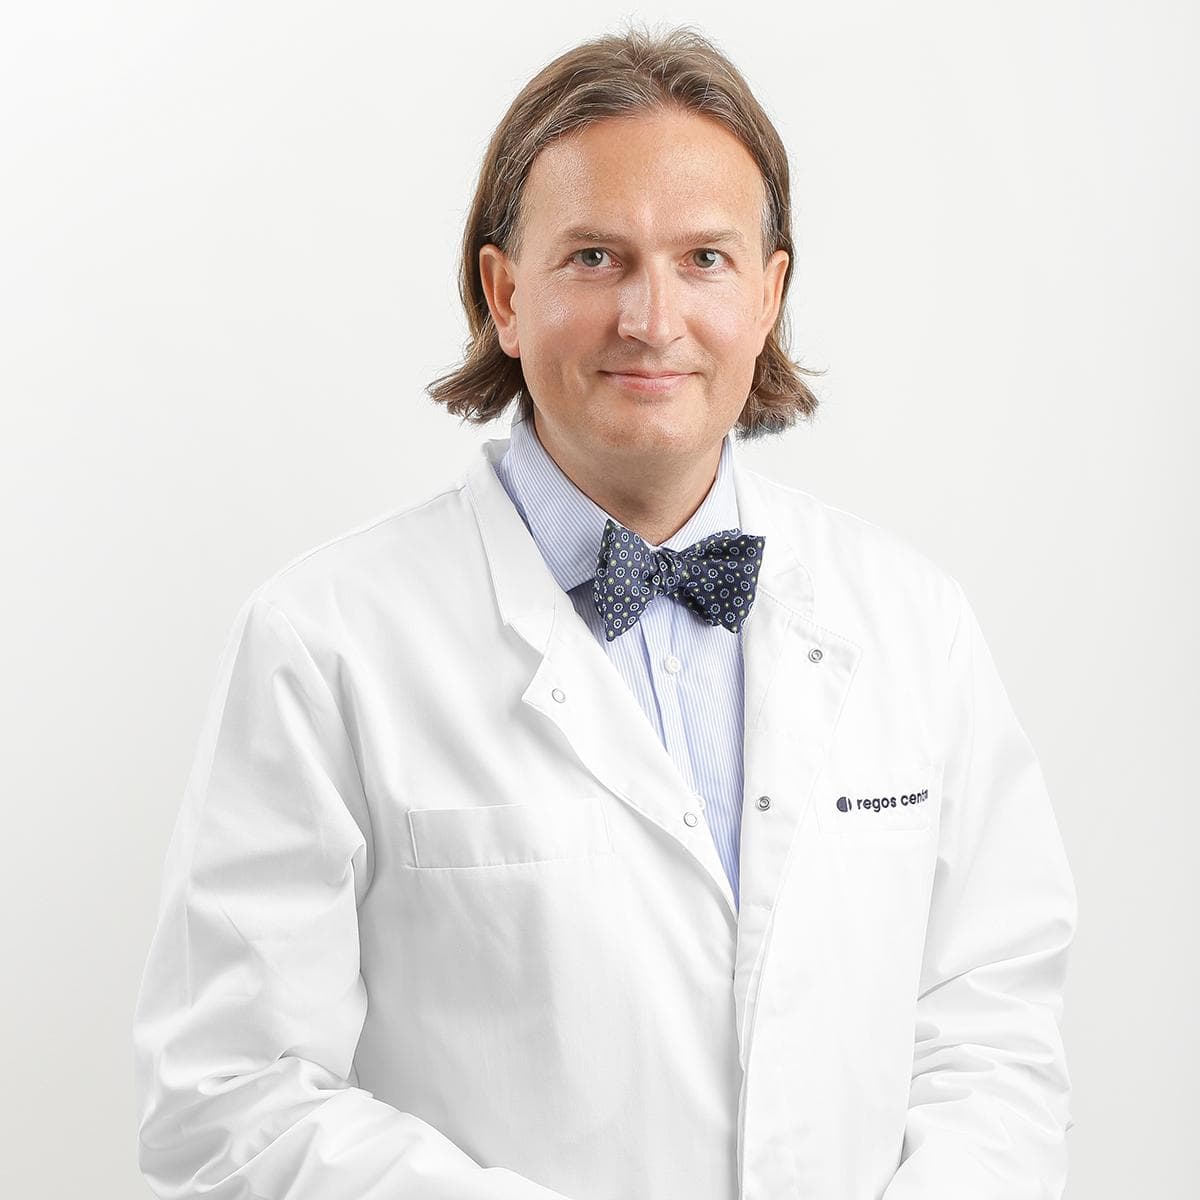 Ophthalmologist-microsurgeon Paulius Rudalevičius, D.M.Sc.